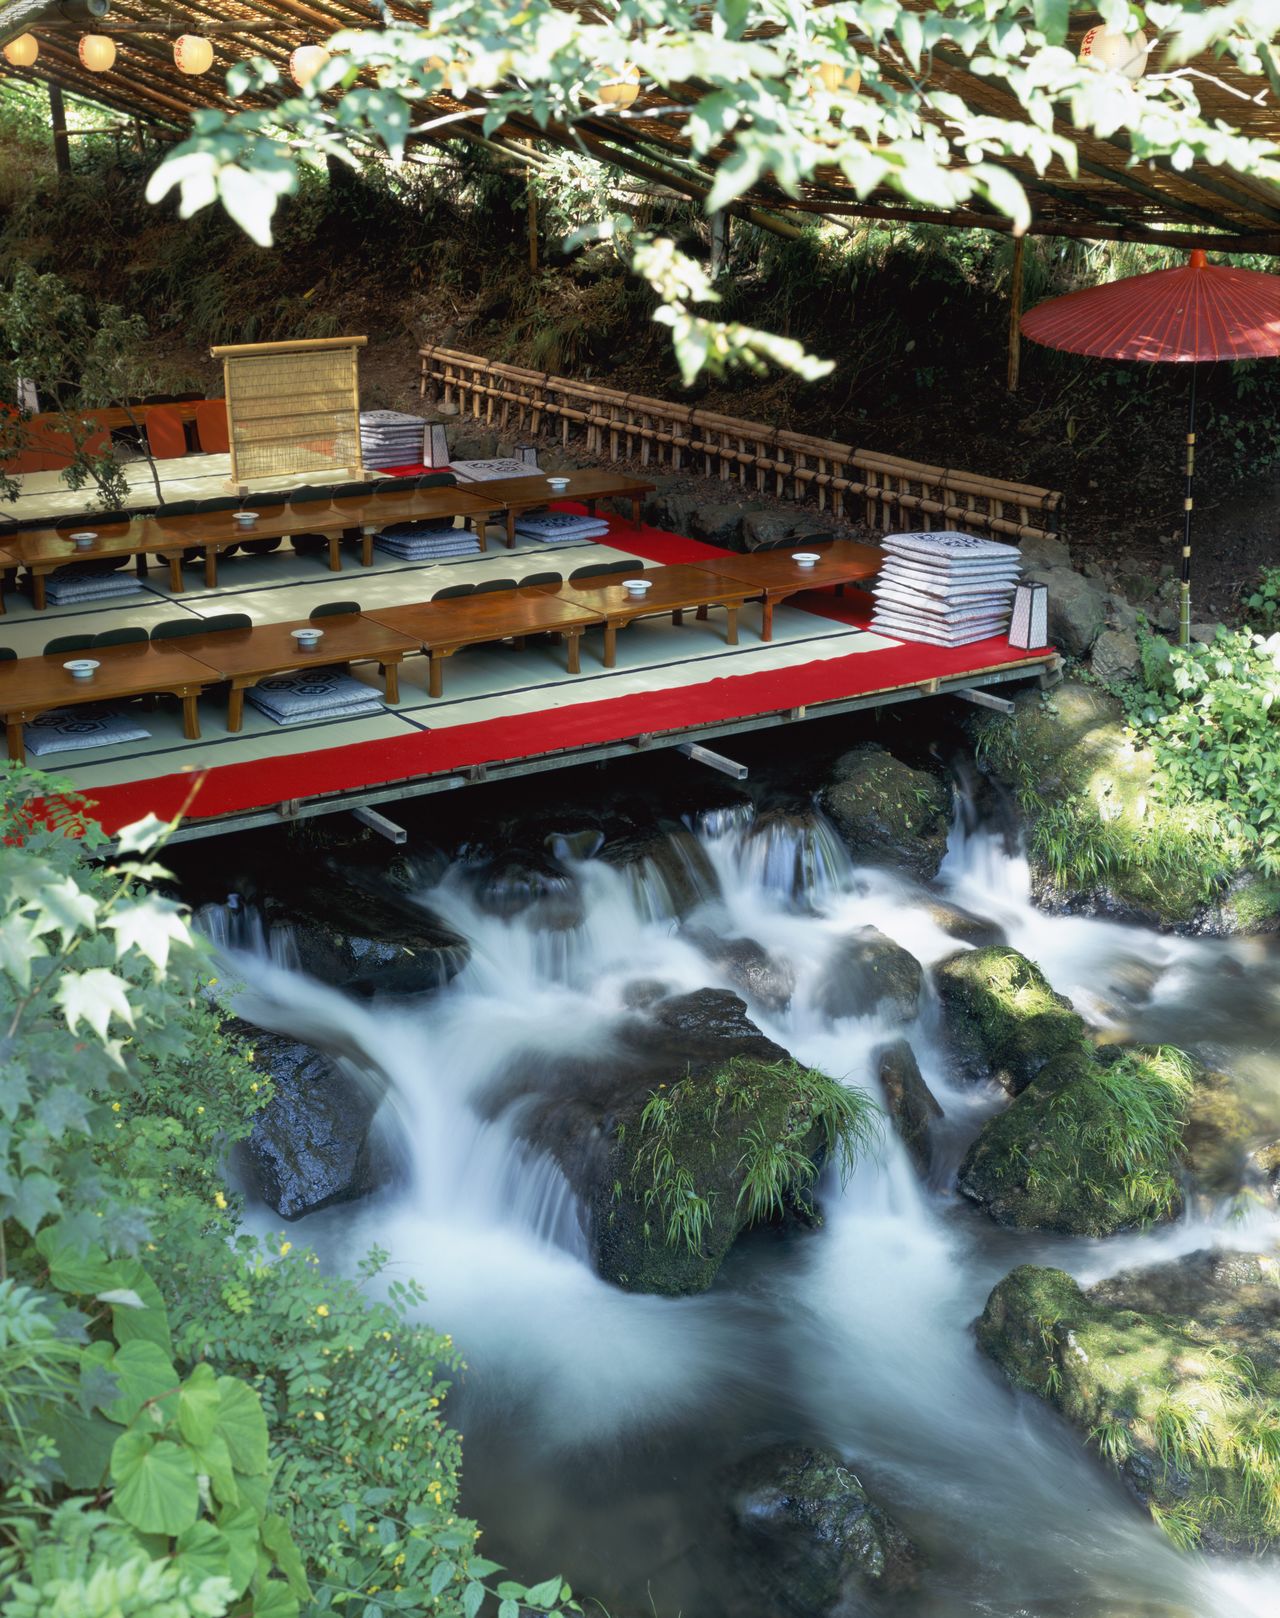 Las terrazas veraniegas sobre el río Kifune. Se puede comer, disfrutando de la fresca corriente del río. (Distrito de Sakyō, ciudad de Kioto. 2009, Jiji) 